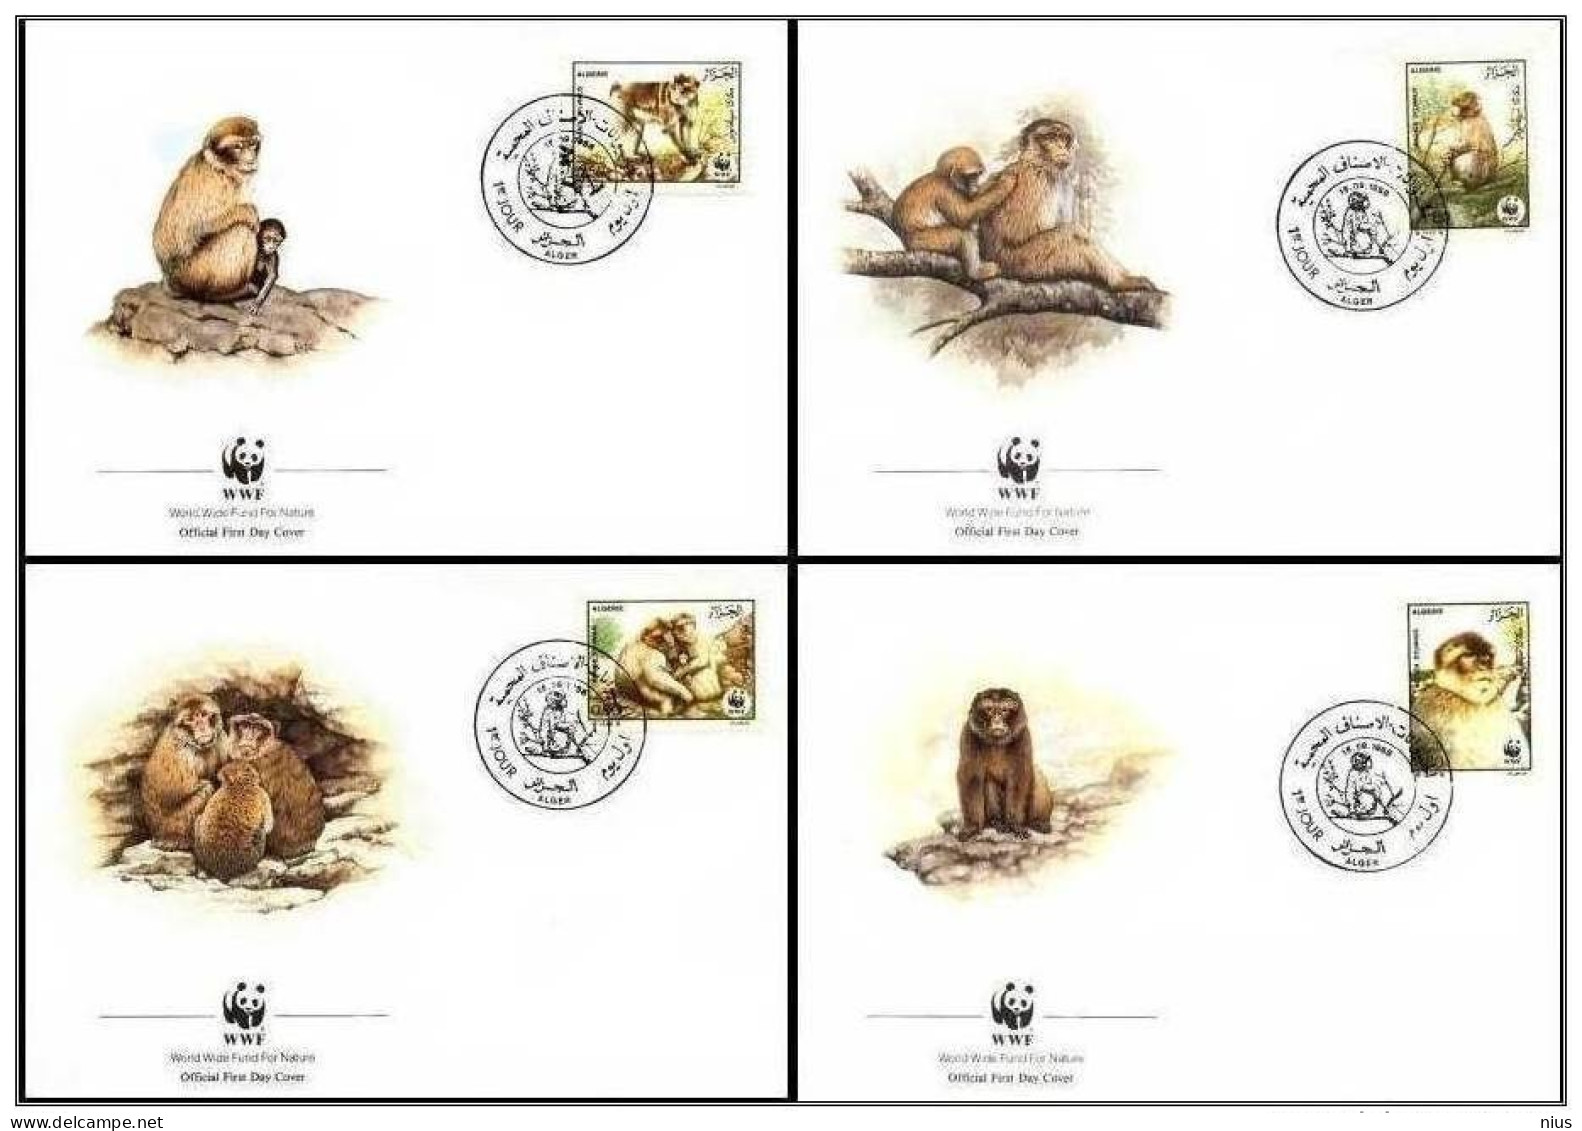 Algeria Algerie Alger 1988 WWF W.W.F. Barbary Macaque 4x FDC Monkey Fauna Monkeys - FDC